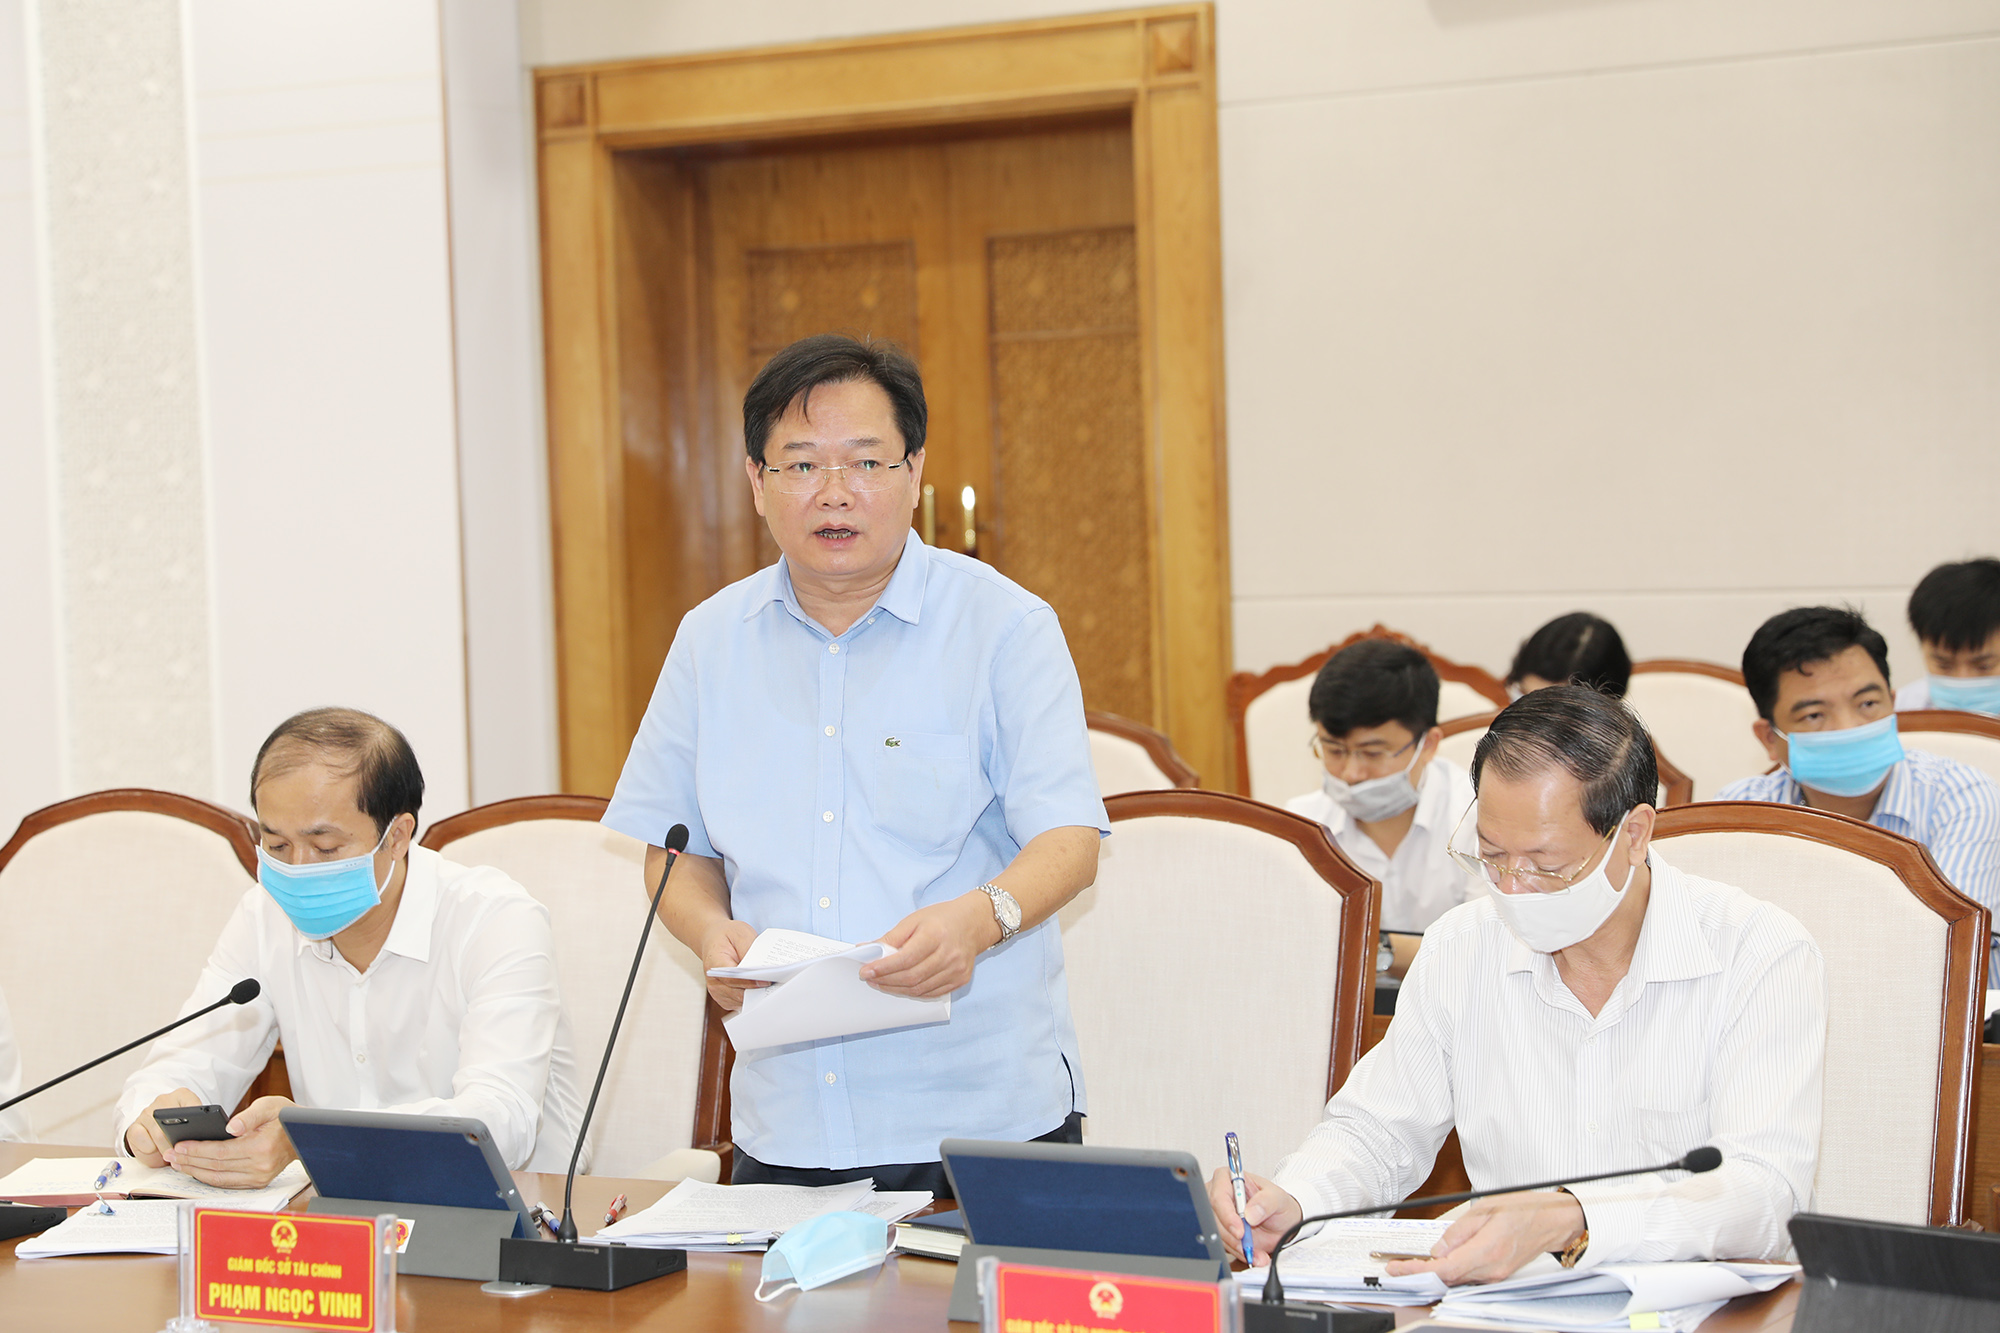 Đồng chí Phạm Ngọc Vinh, Giám đốc Sở Tài chính báo cáo công tác thu, chi ngân sách tháng 8 và 8 tháng năm 2020